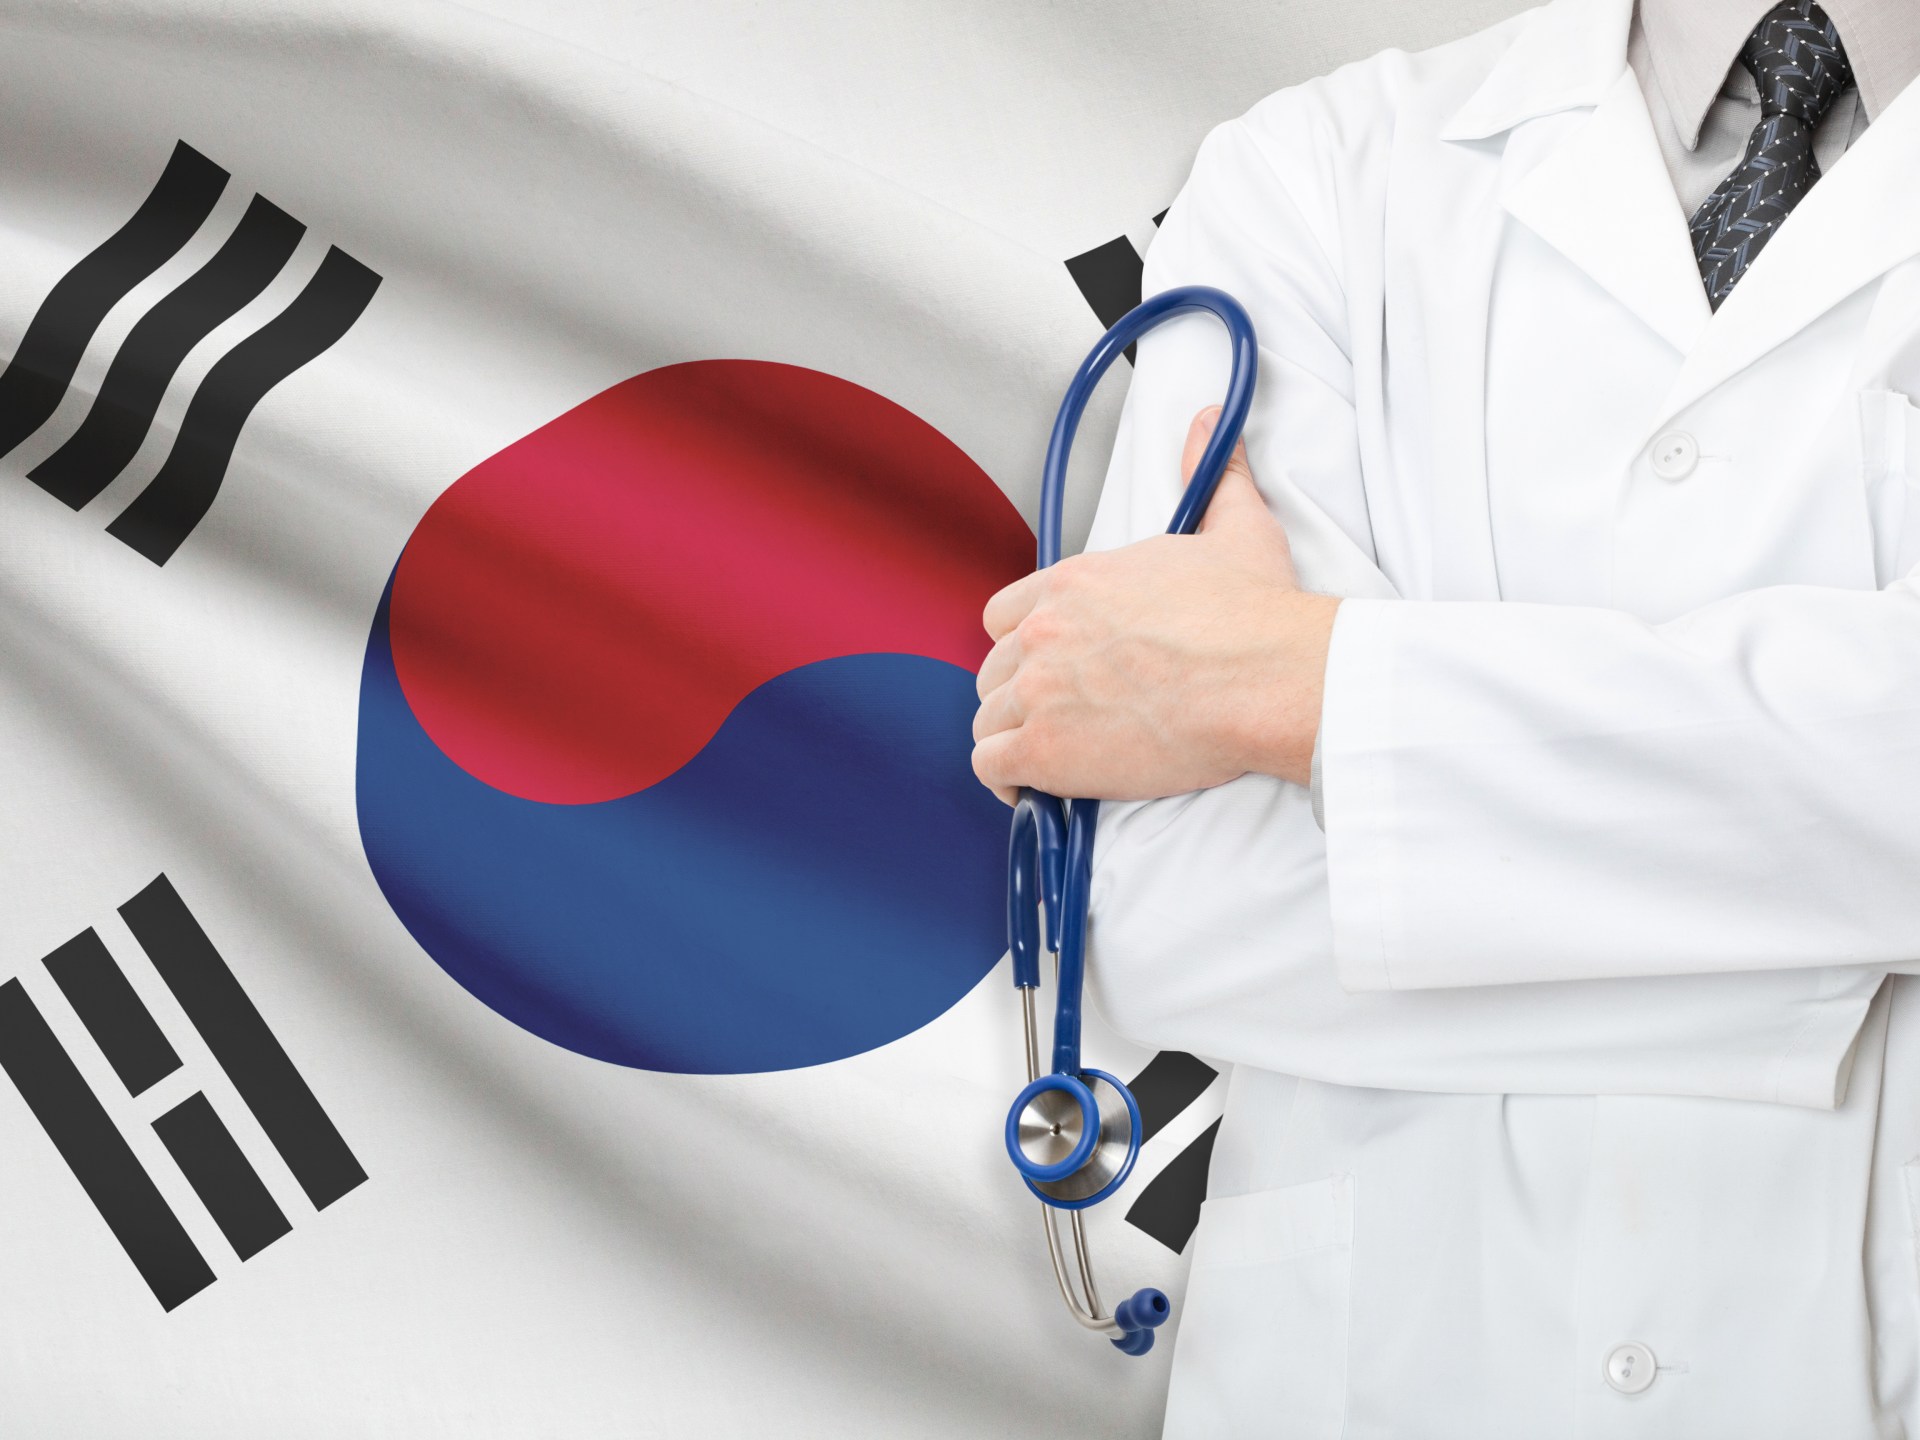 كوريا الجنوبية تأمر بعض الأطباء المضربين بالعودة إلى العمل | صحة – البوكس نيوز